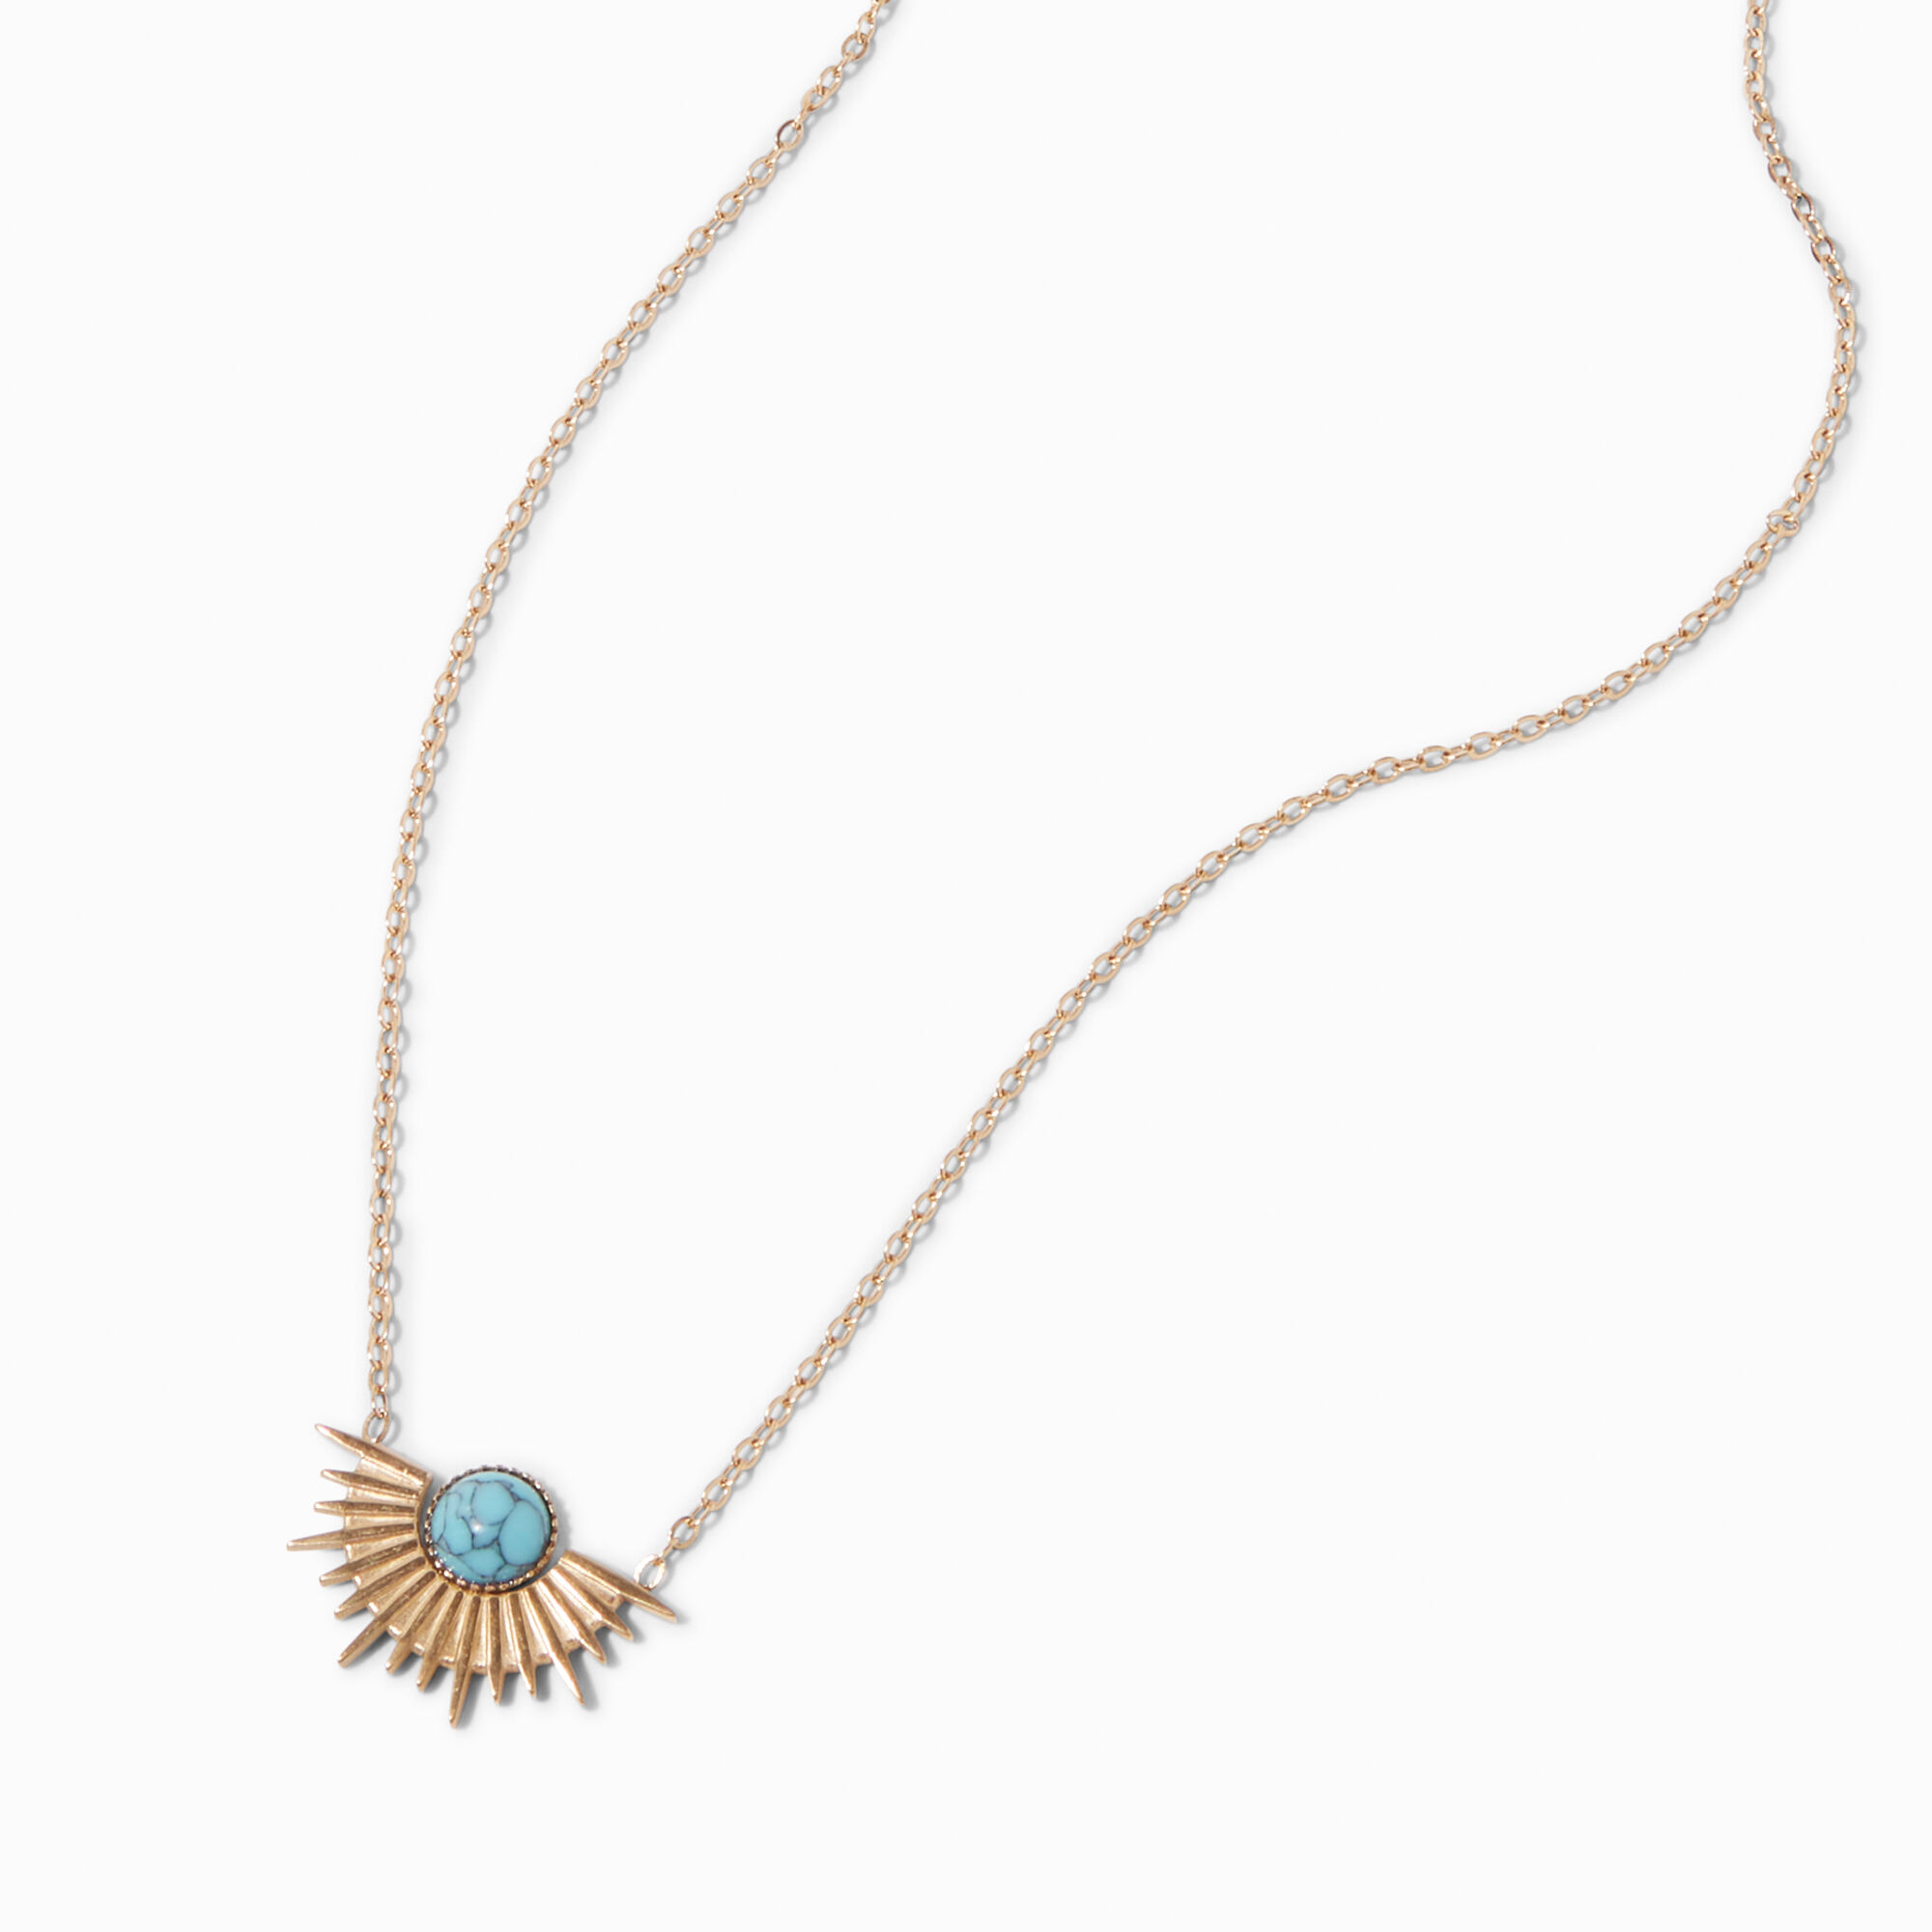 View Claires GoldTone Sunburst Pendant Necklace Turquoise information